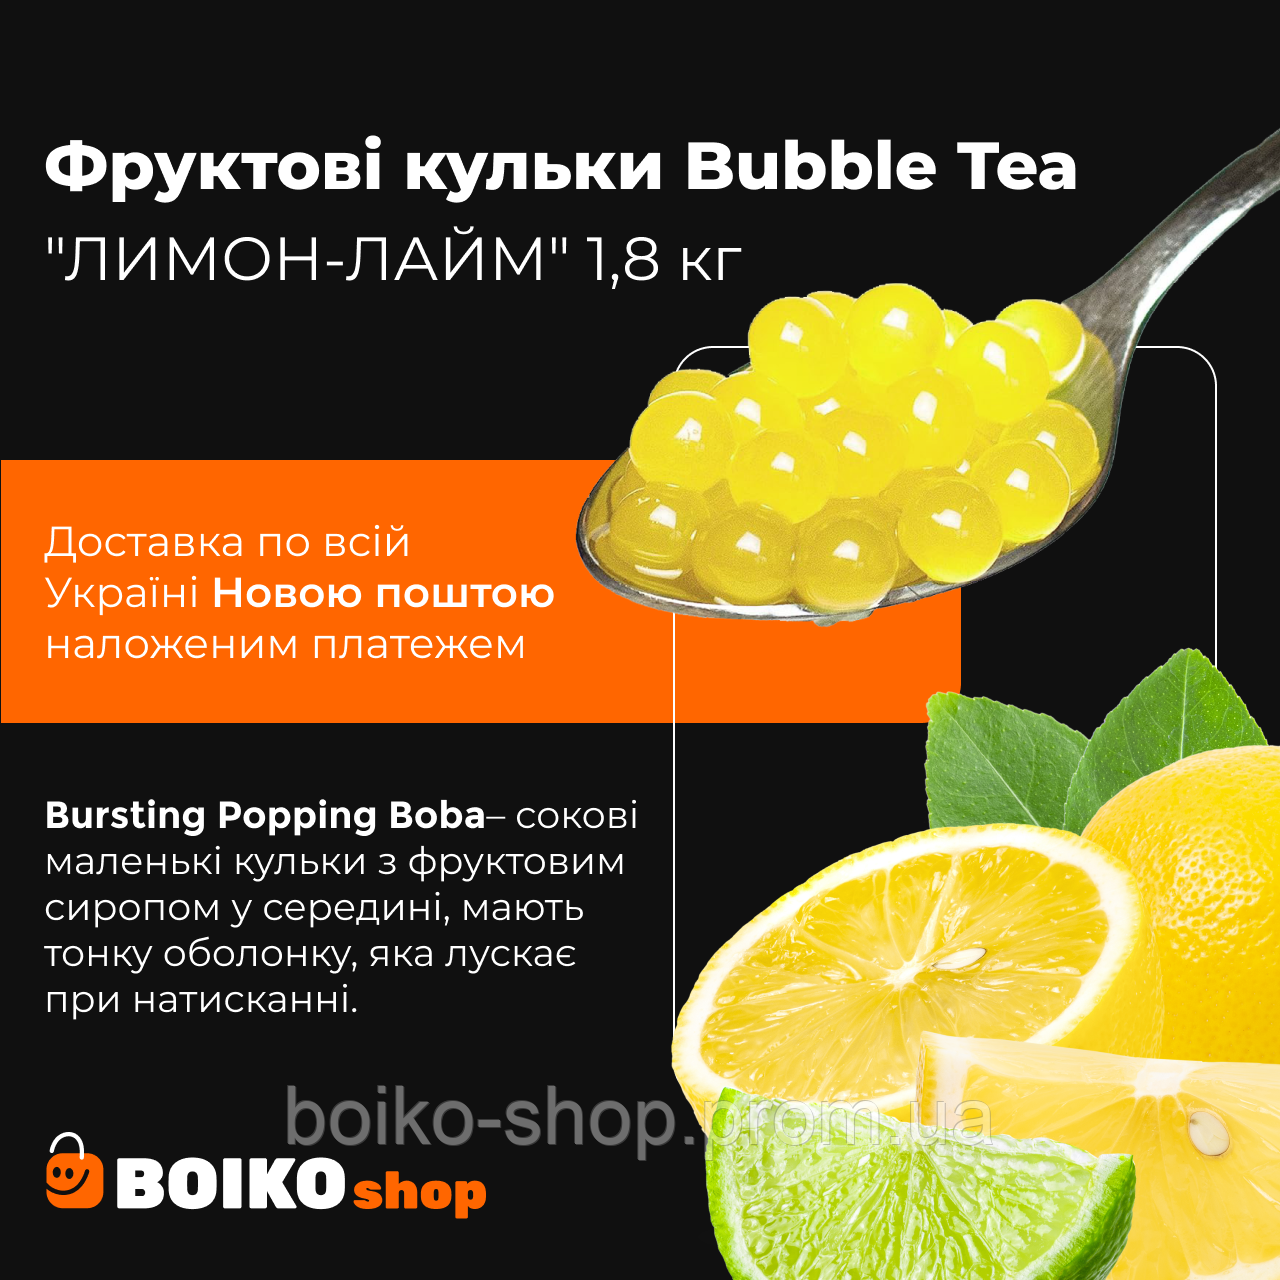 Фруктові кульки Bubble Tea "ЛИМОН-ЛАЙМ" 1,8 кг